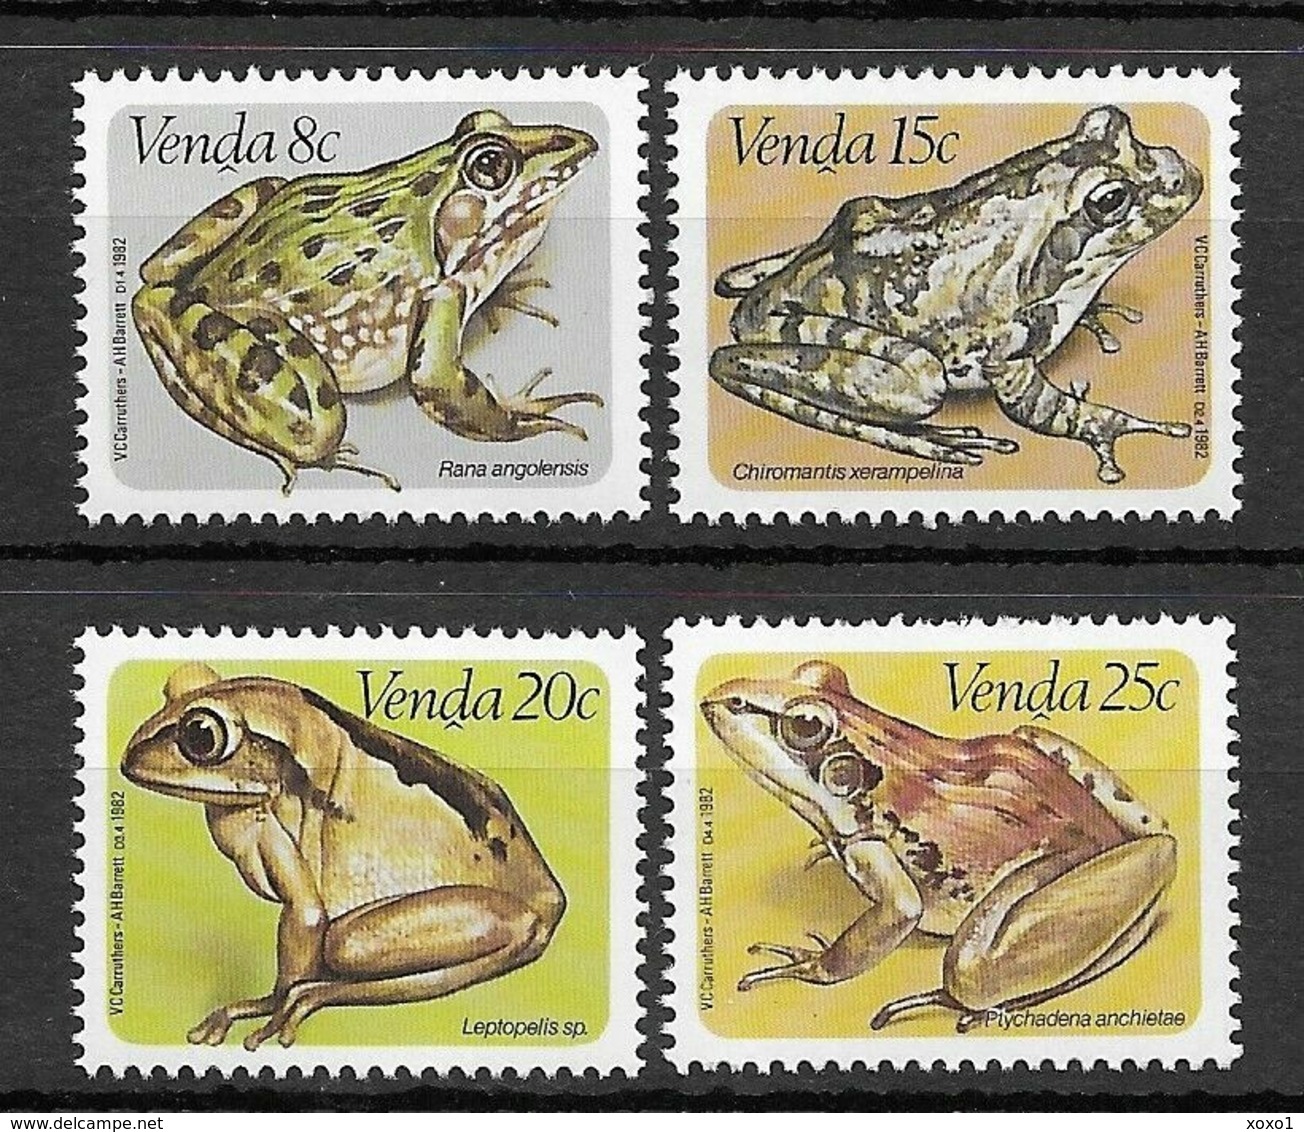 Venda South Africa 1982  MiNr. 66 - 69  amphibians Frösche Frogs 4v MNH** 2,60 € - Rane